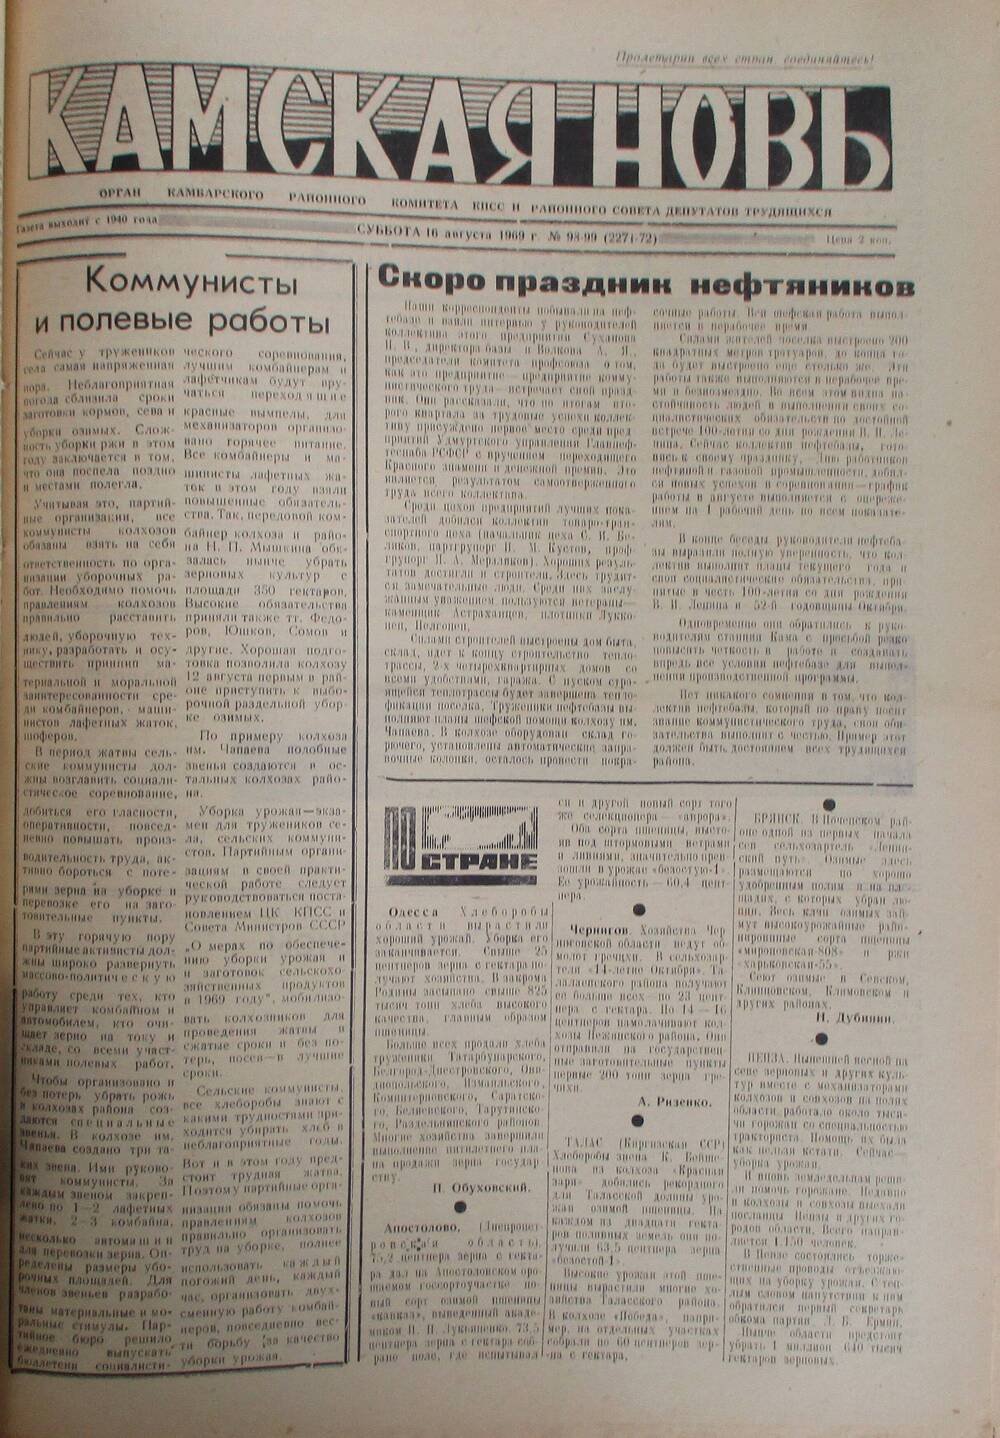 Газеты Камская новь за 1969 год, орган Камбарского райсовета и  РККПСС, с №1 по №66, с №68 по №156. №98-99.